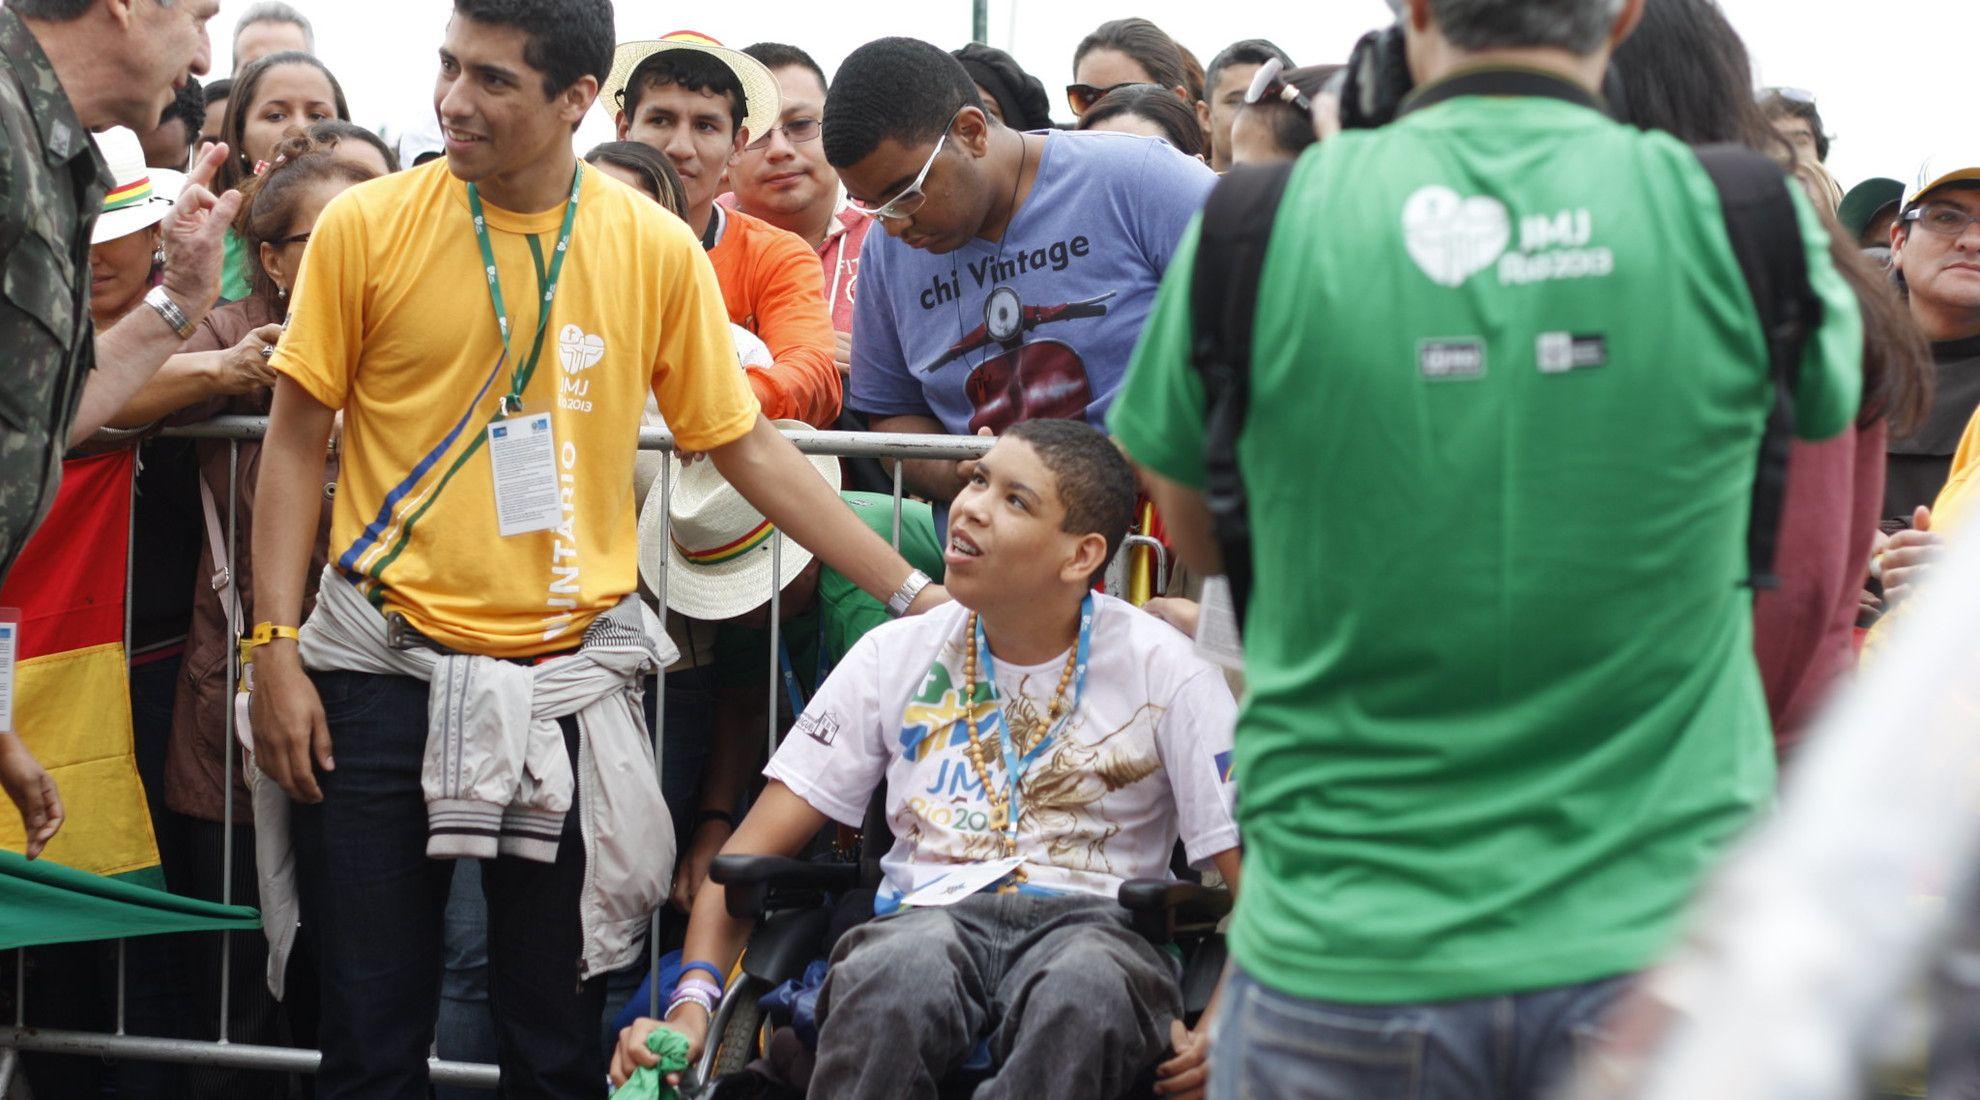 WYD Rio 2013 Volunteers